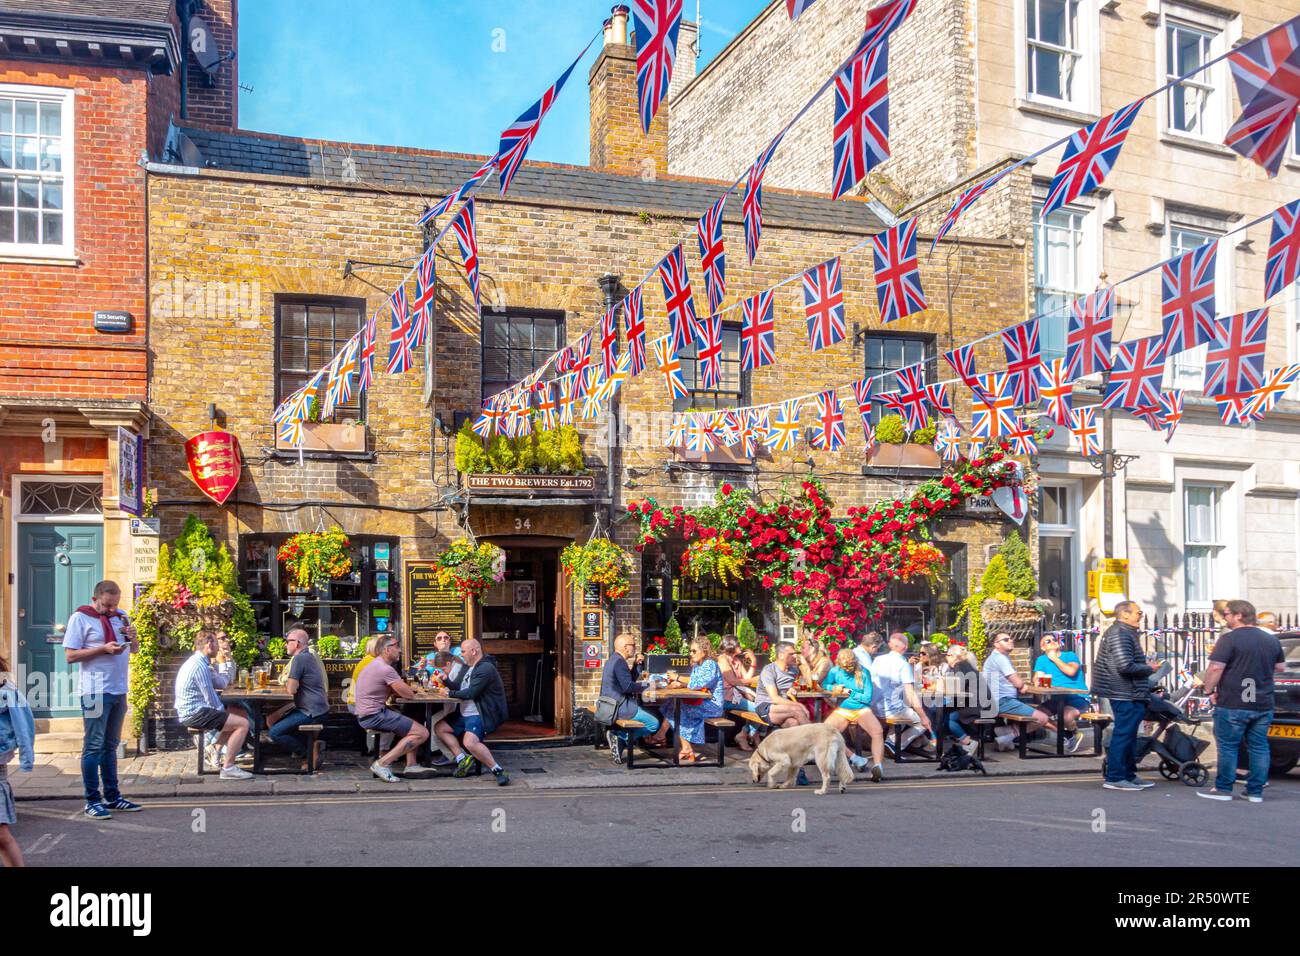 Escena ocupada fuera del pub Two Brewers en Windsor, Berkshire, Reino Unido con la gente en el jardín de la cerveza bebiendo y Union Jack bunting decorando la calle. Foto de stock